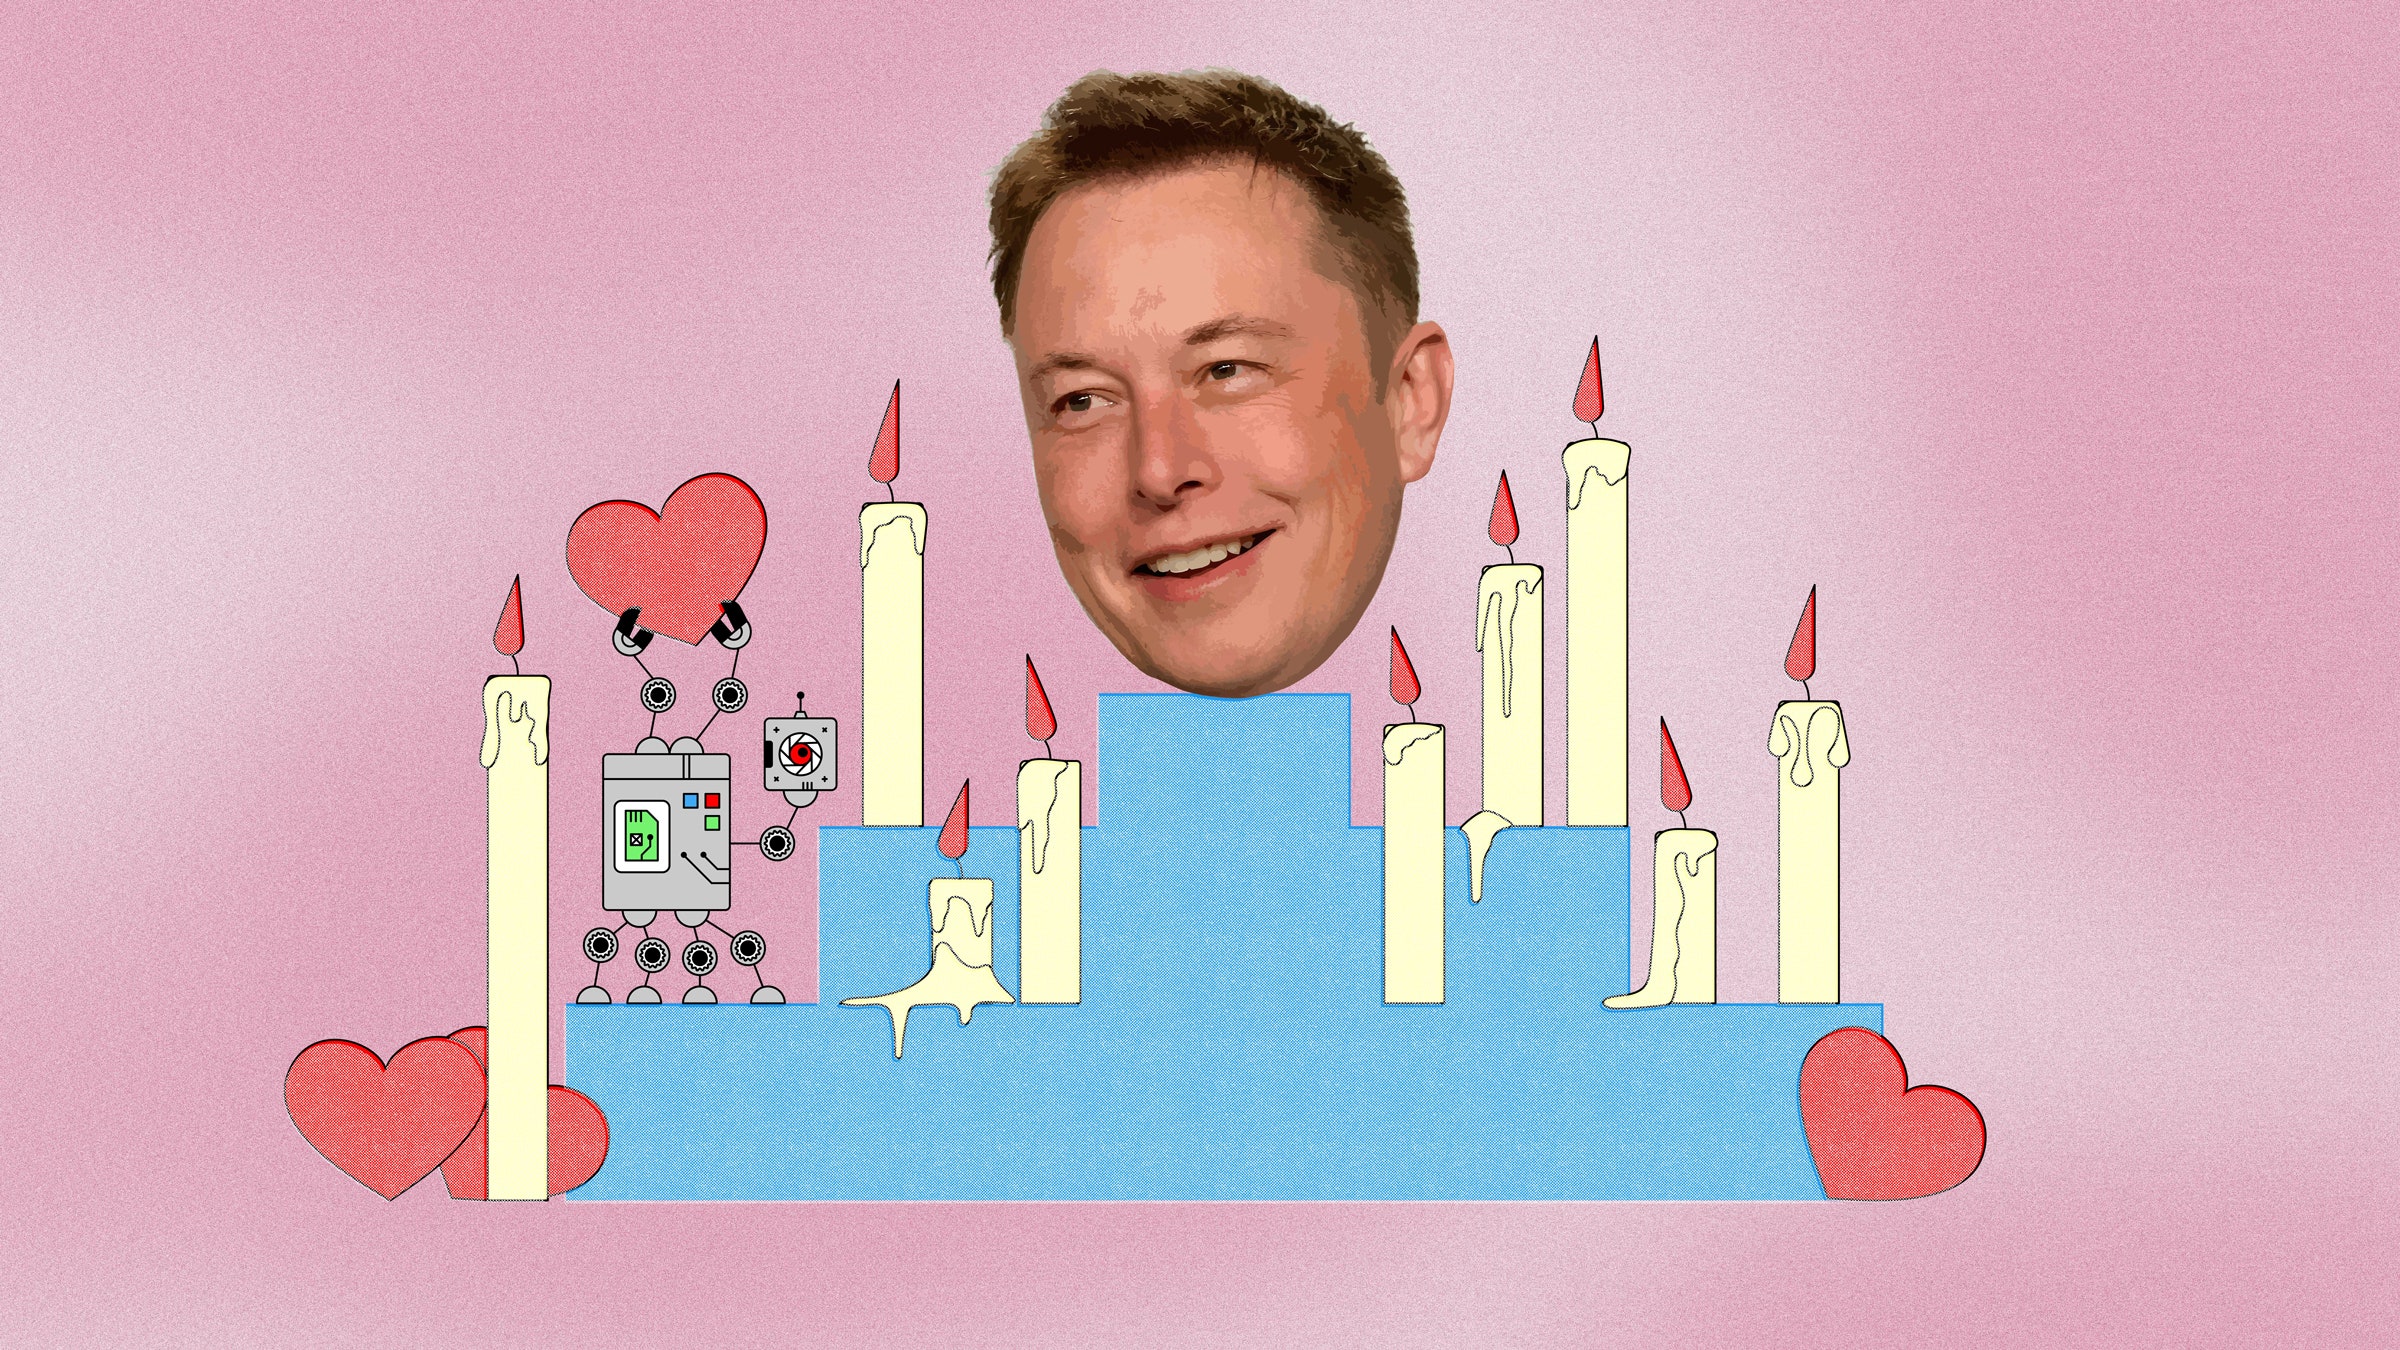 A cabeça de Elon Musk em um altar com velas e um bot segurando um coração